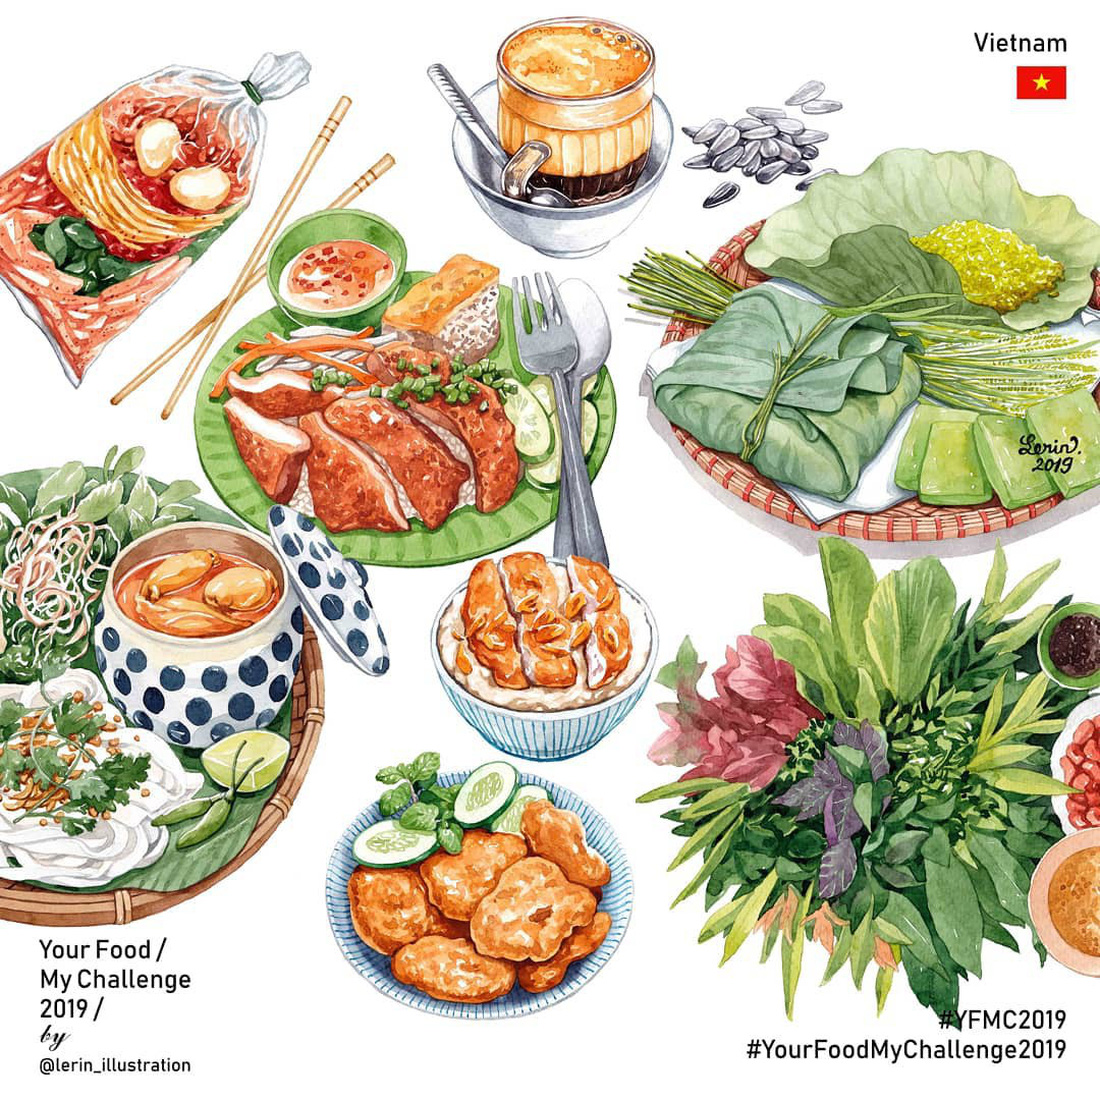 Chết thèm với thế giới món ăn trên tranh của chàng trai Việt - Ảnh 8.